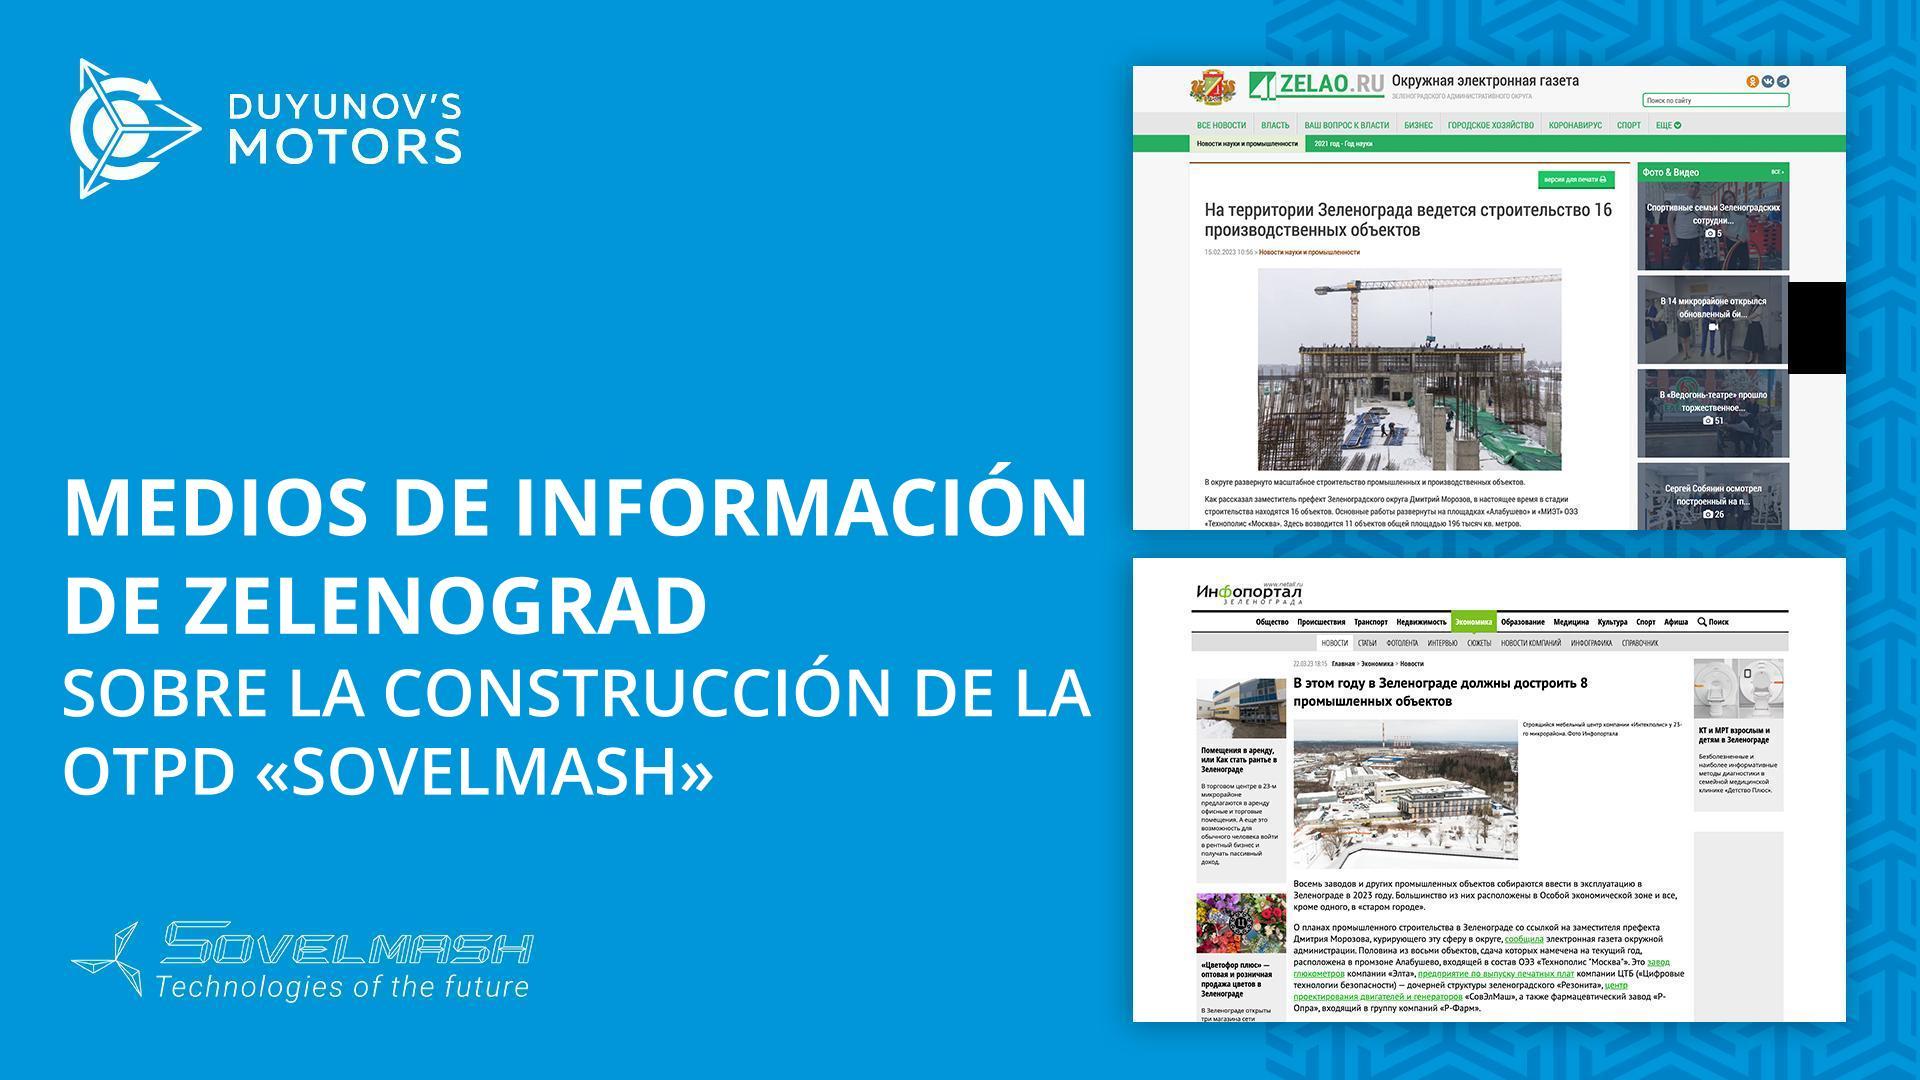 Medios de información de Zelenograd sobre la construcción de la OTPD "Sovelmash"